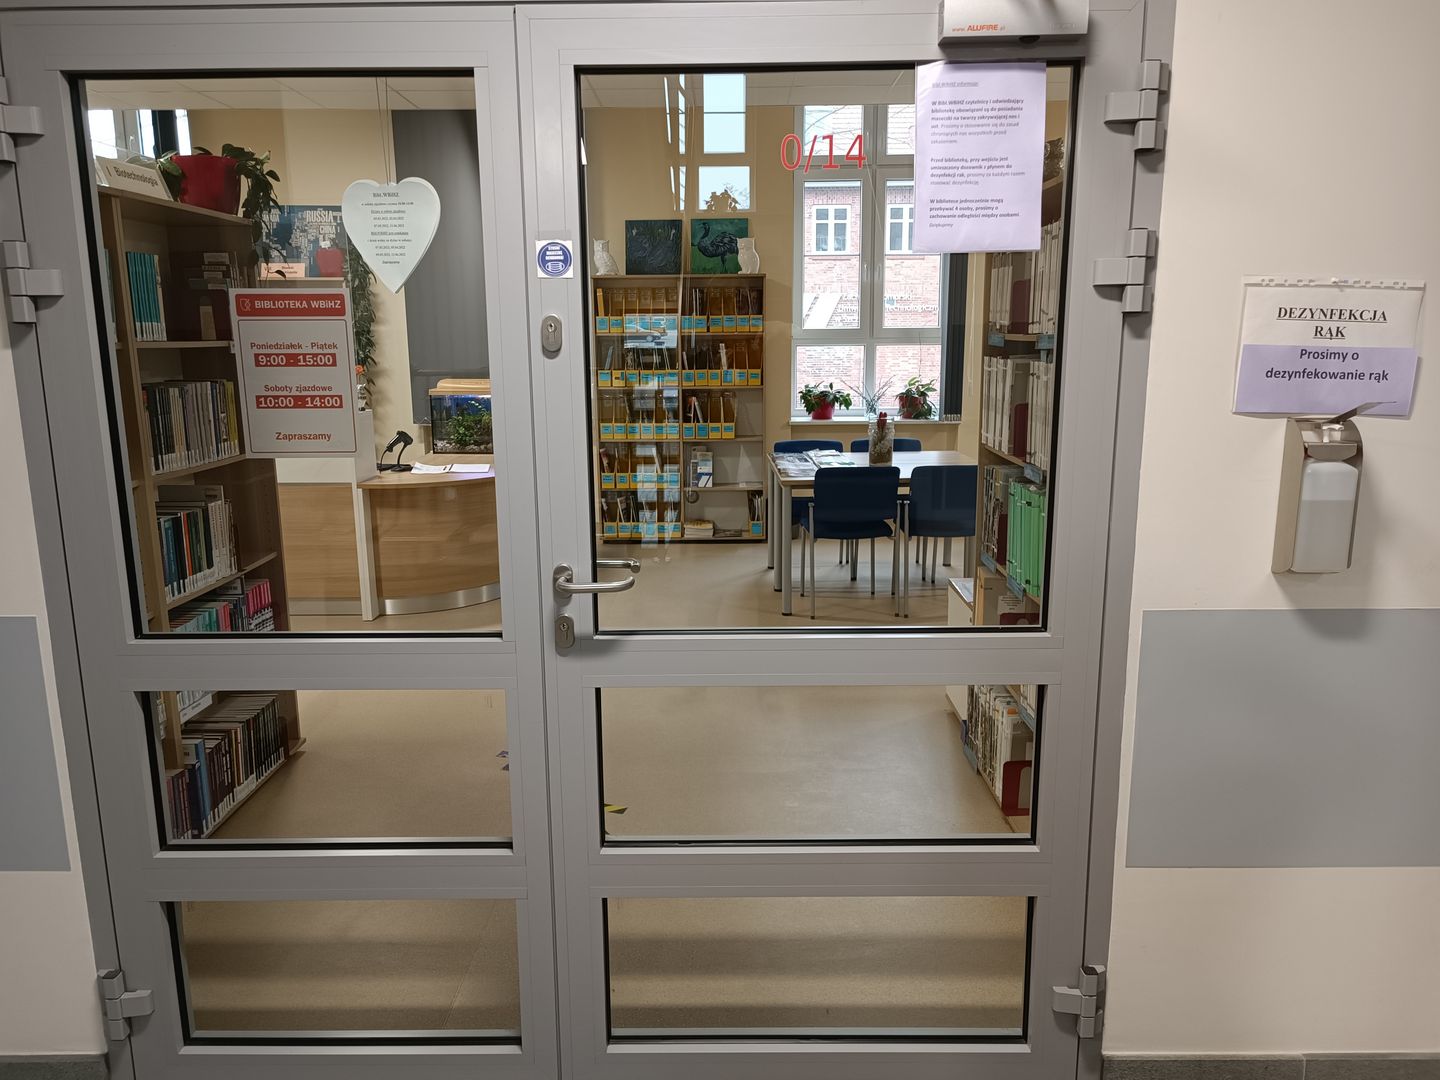 Zdjęcie przedstawia wejście do biblioteki z dozownikiem z płynem do dezynfekcji rąk umieszczonym na śzianie obok drzwi